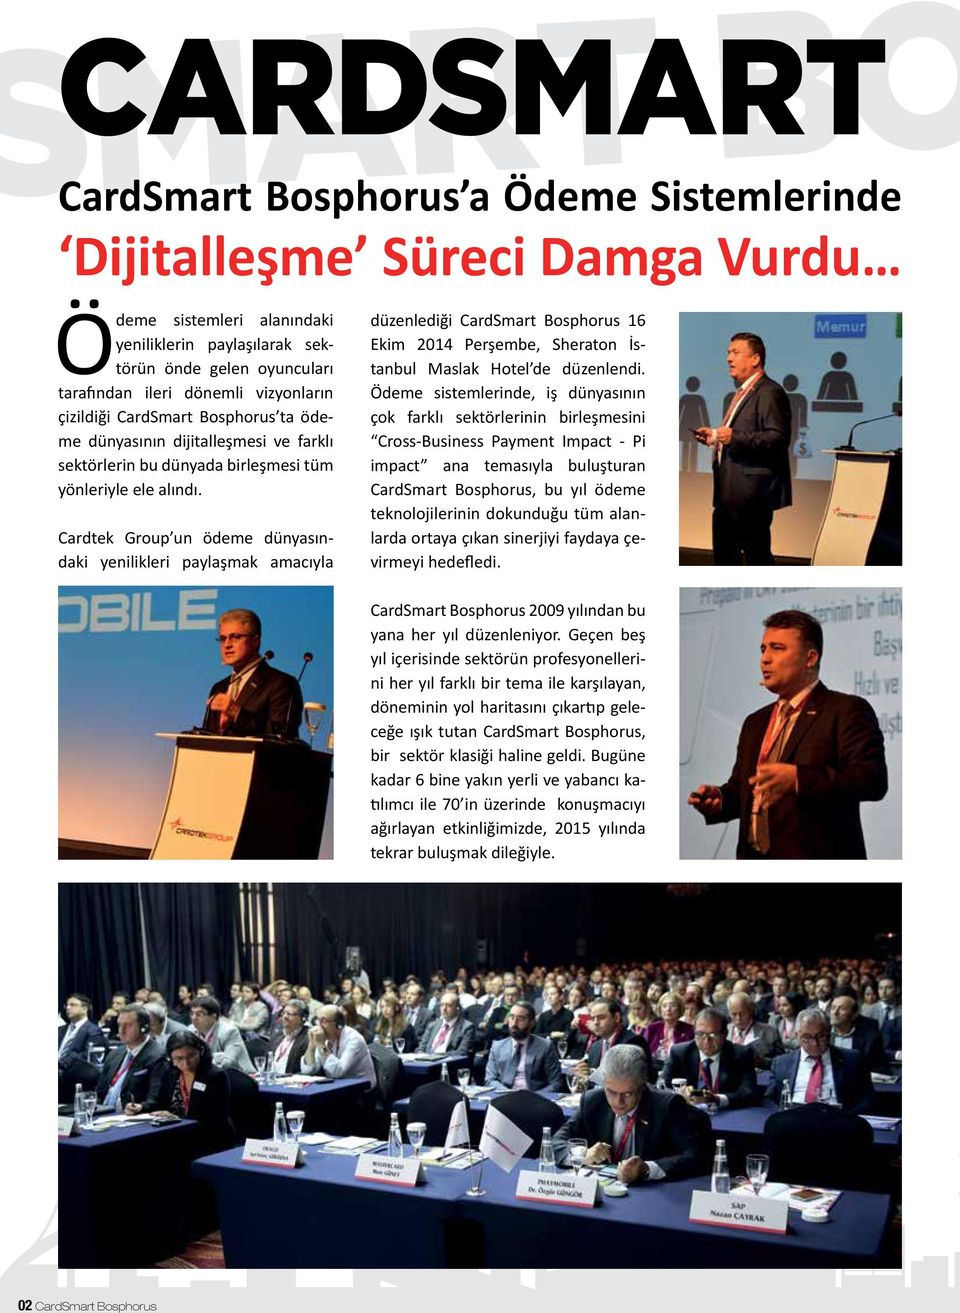 Cardtek Group un ödeme dünyasındaki yenilikleri paylaşmak amacıyla düzenlediği CardSmart Bosphorus 16 Ekim 2014 Perşembe, Sheraton İstanbul Maslak Hotel de düzenlendi.